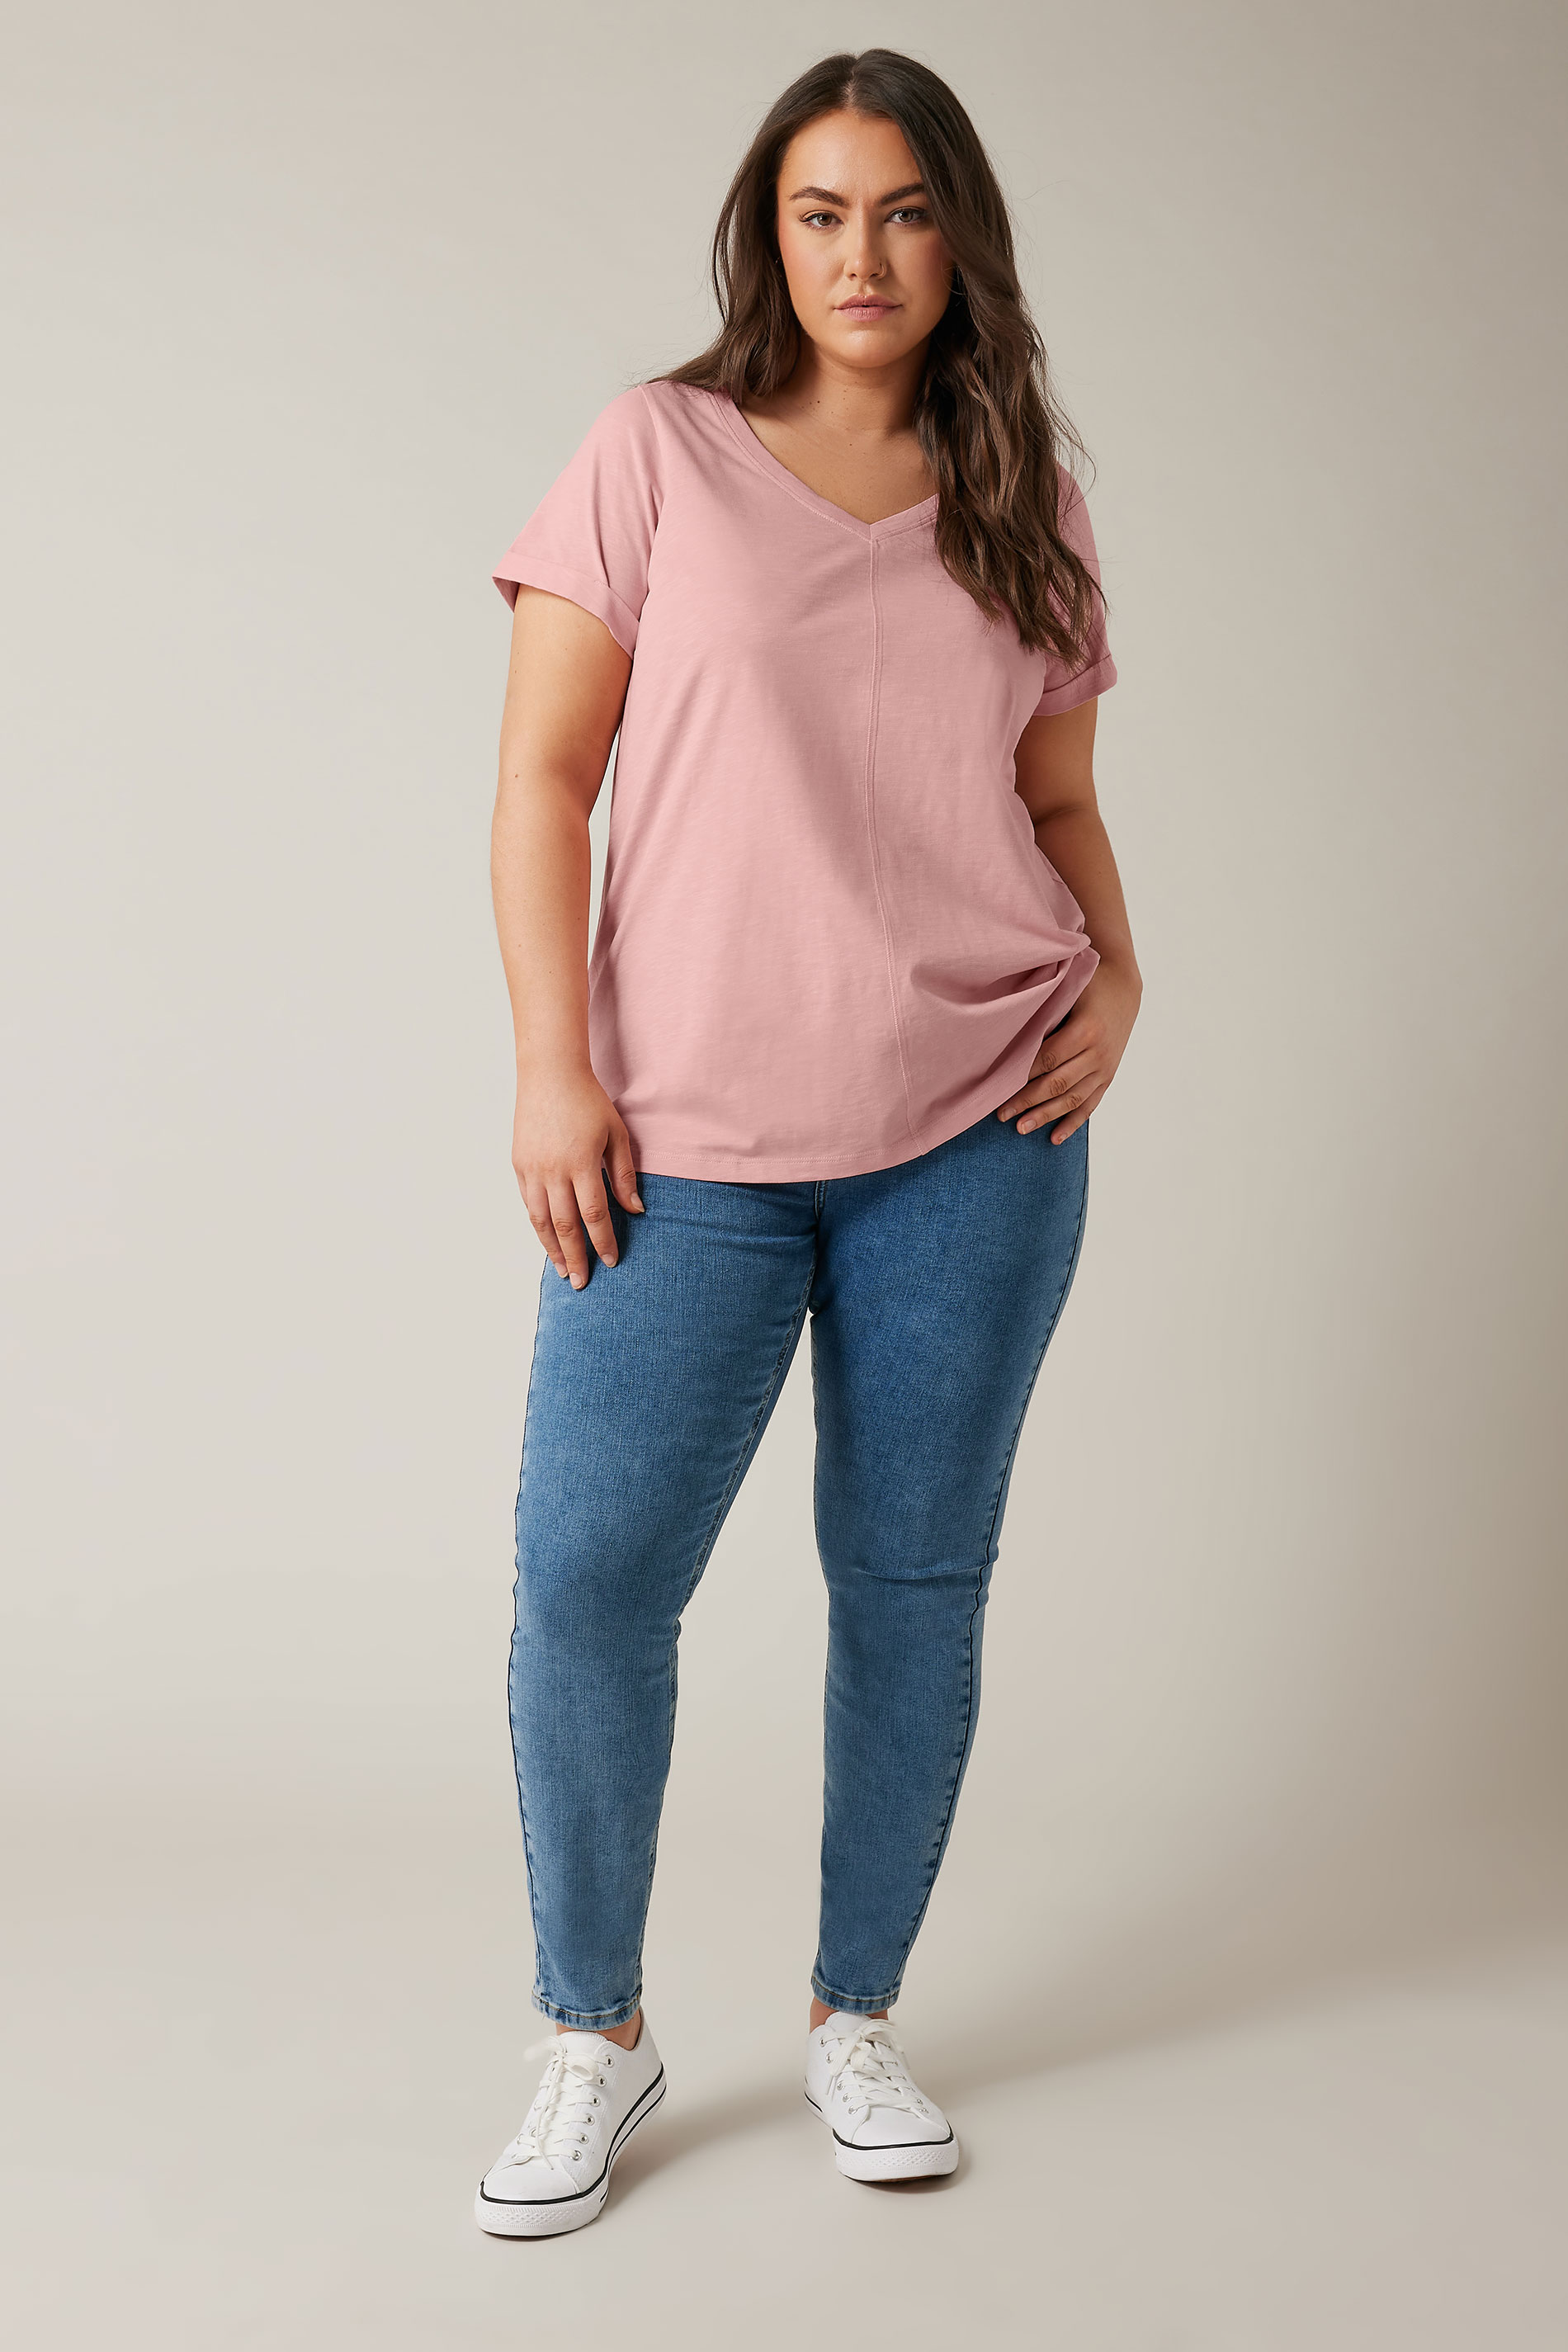 EVANS Plus Size Pink Pure Cotton T-Shirt | Yours Curve 3